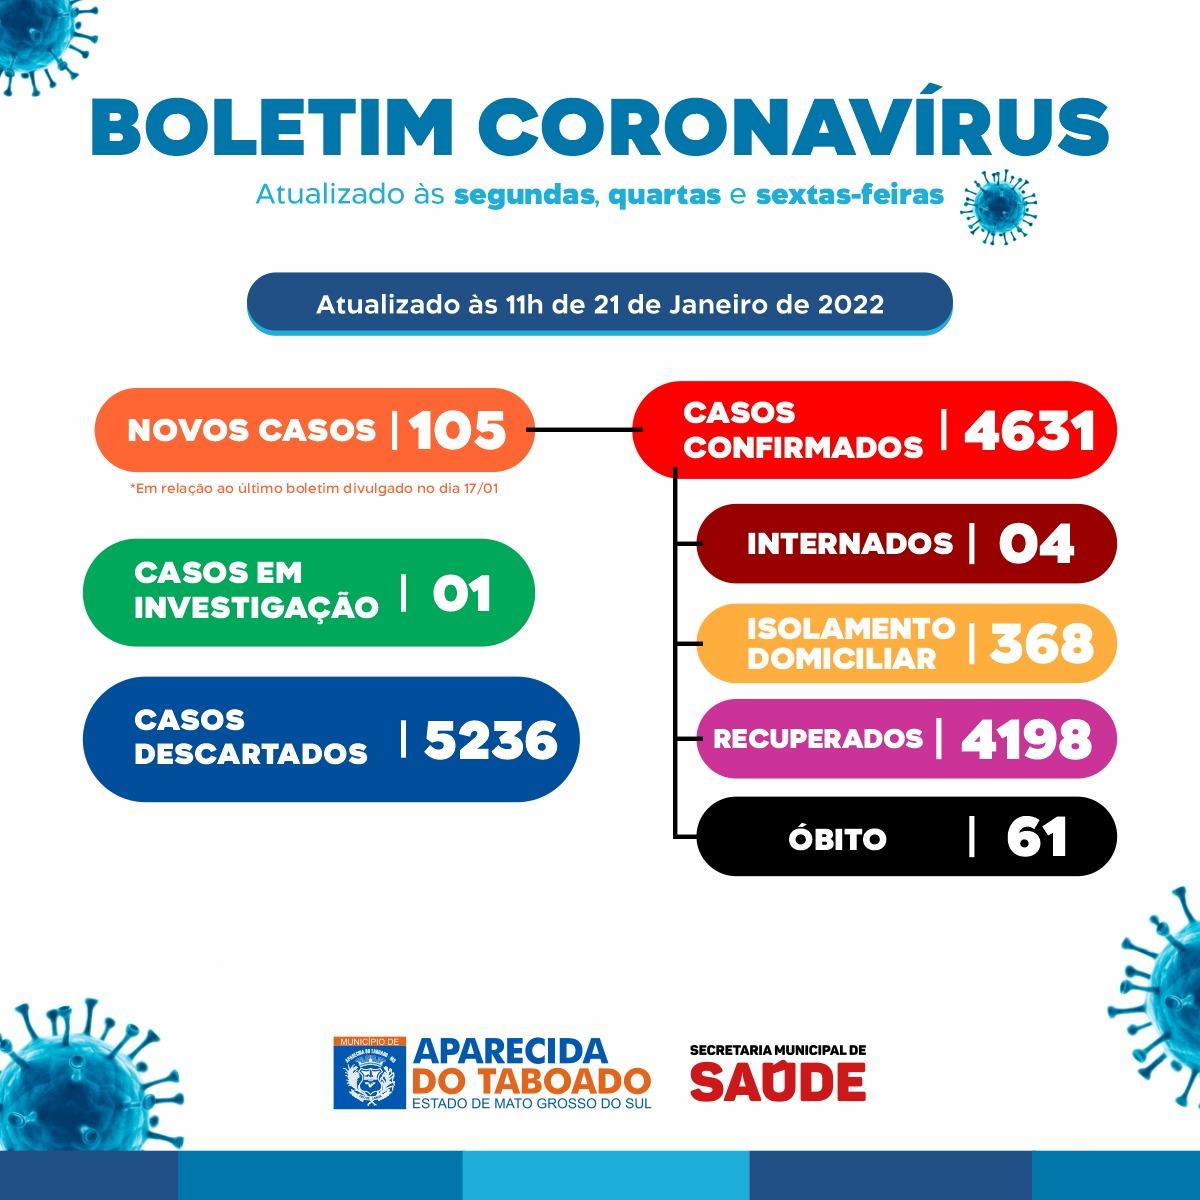 Aparecida do Taboado registra 298 casos positivos de Covid-19 em 5 dias e Secretaria de Saúde faz alerta